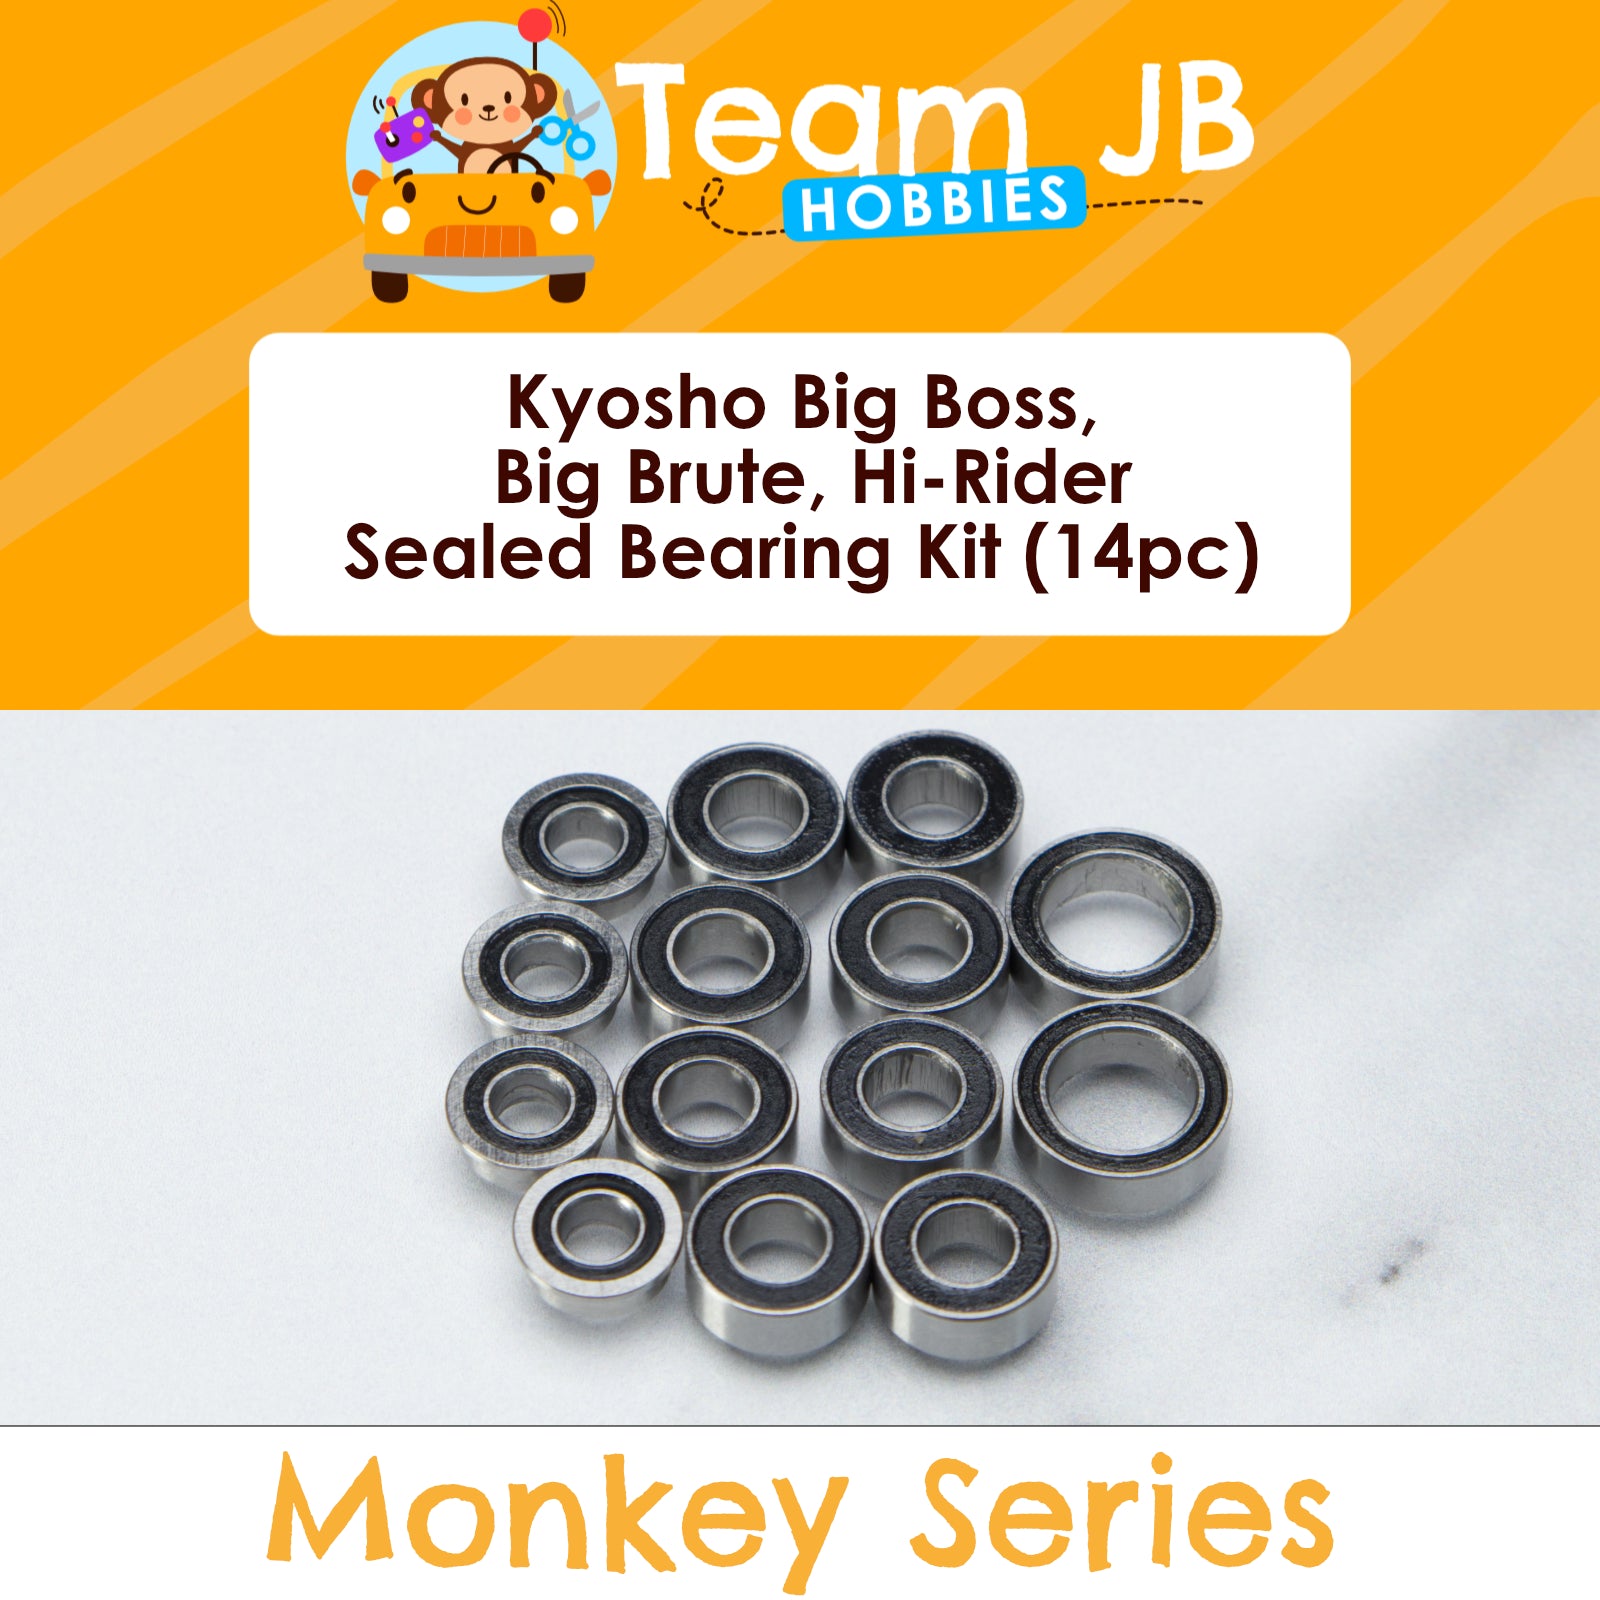 Kyosho Big Boss, Big Brute, Hi-Rider - Sealed Bearing Kit